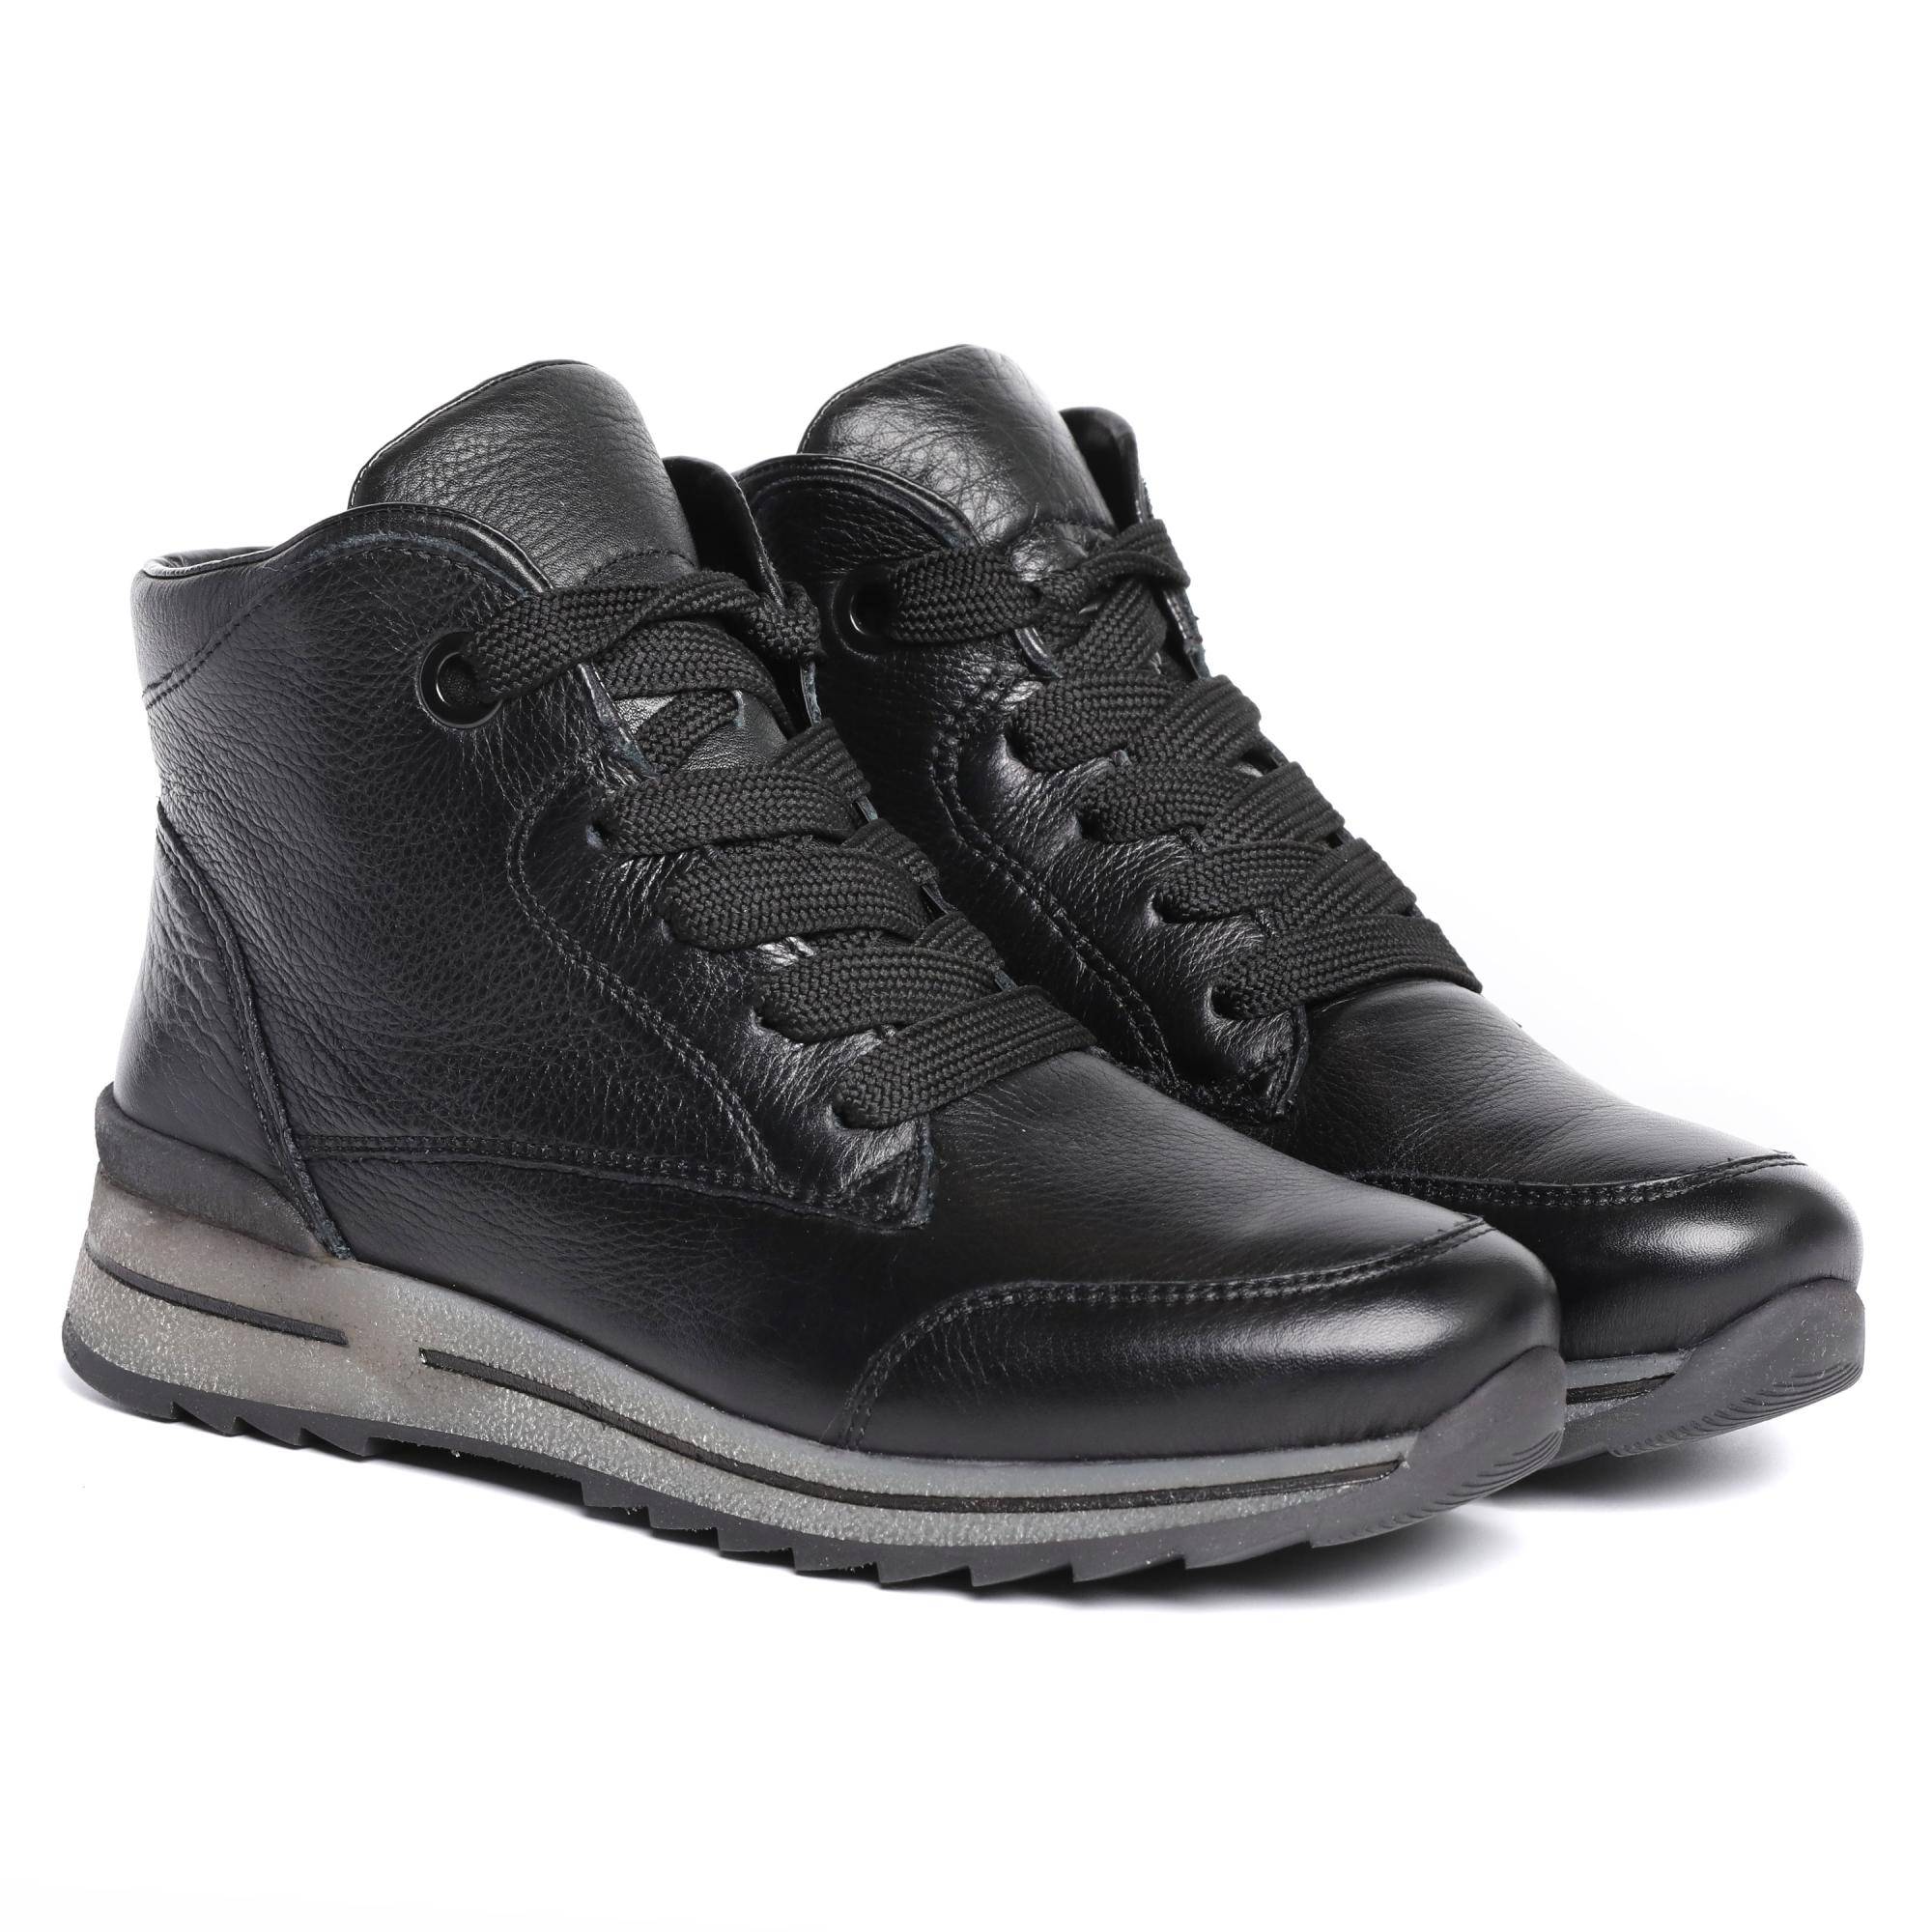 Купить Женские ботинки ARA, цвет черный, Модель: OSAKA-SPORT-ST, арт:12-24543-61, цена от 16490 руб. в Официальном интернет-магазине обуви иаксессуаров - SOHO